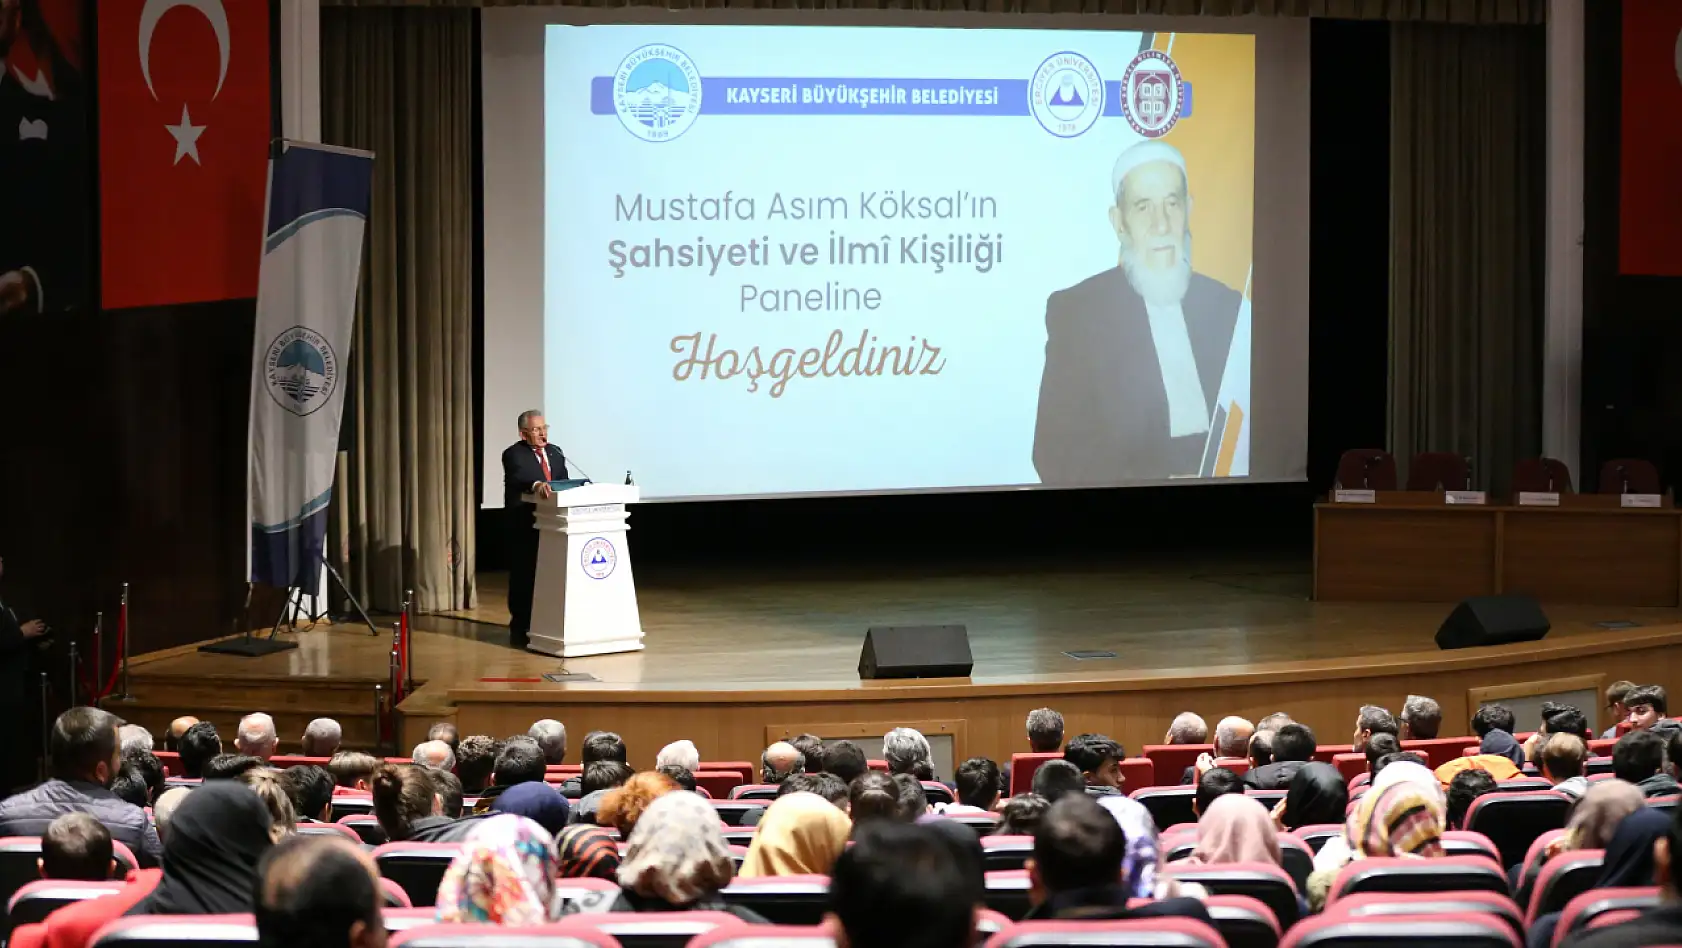 'Mustafa Asım Köksal'ın Şahsiyeti ve İlmi Kişiliği' paneli